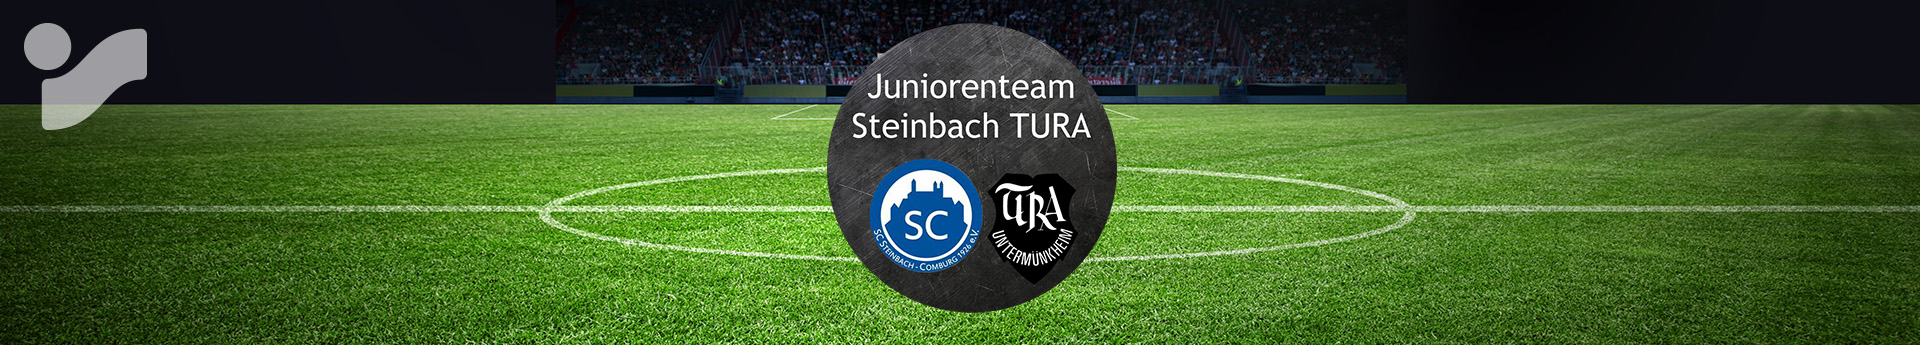 Juniorenteam Steinbach TURA Title Image